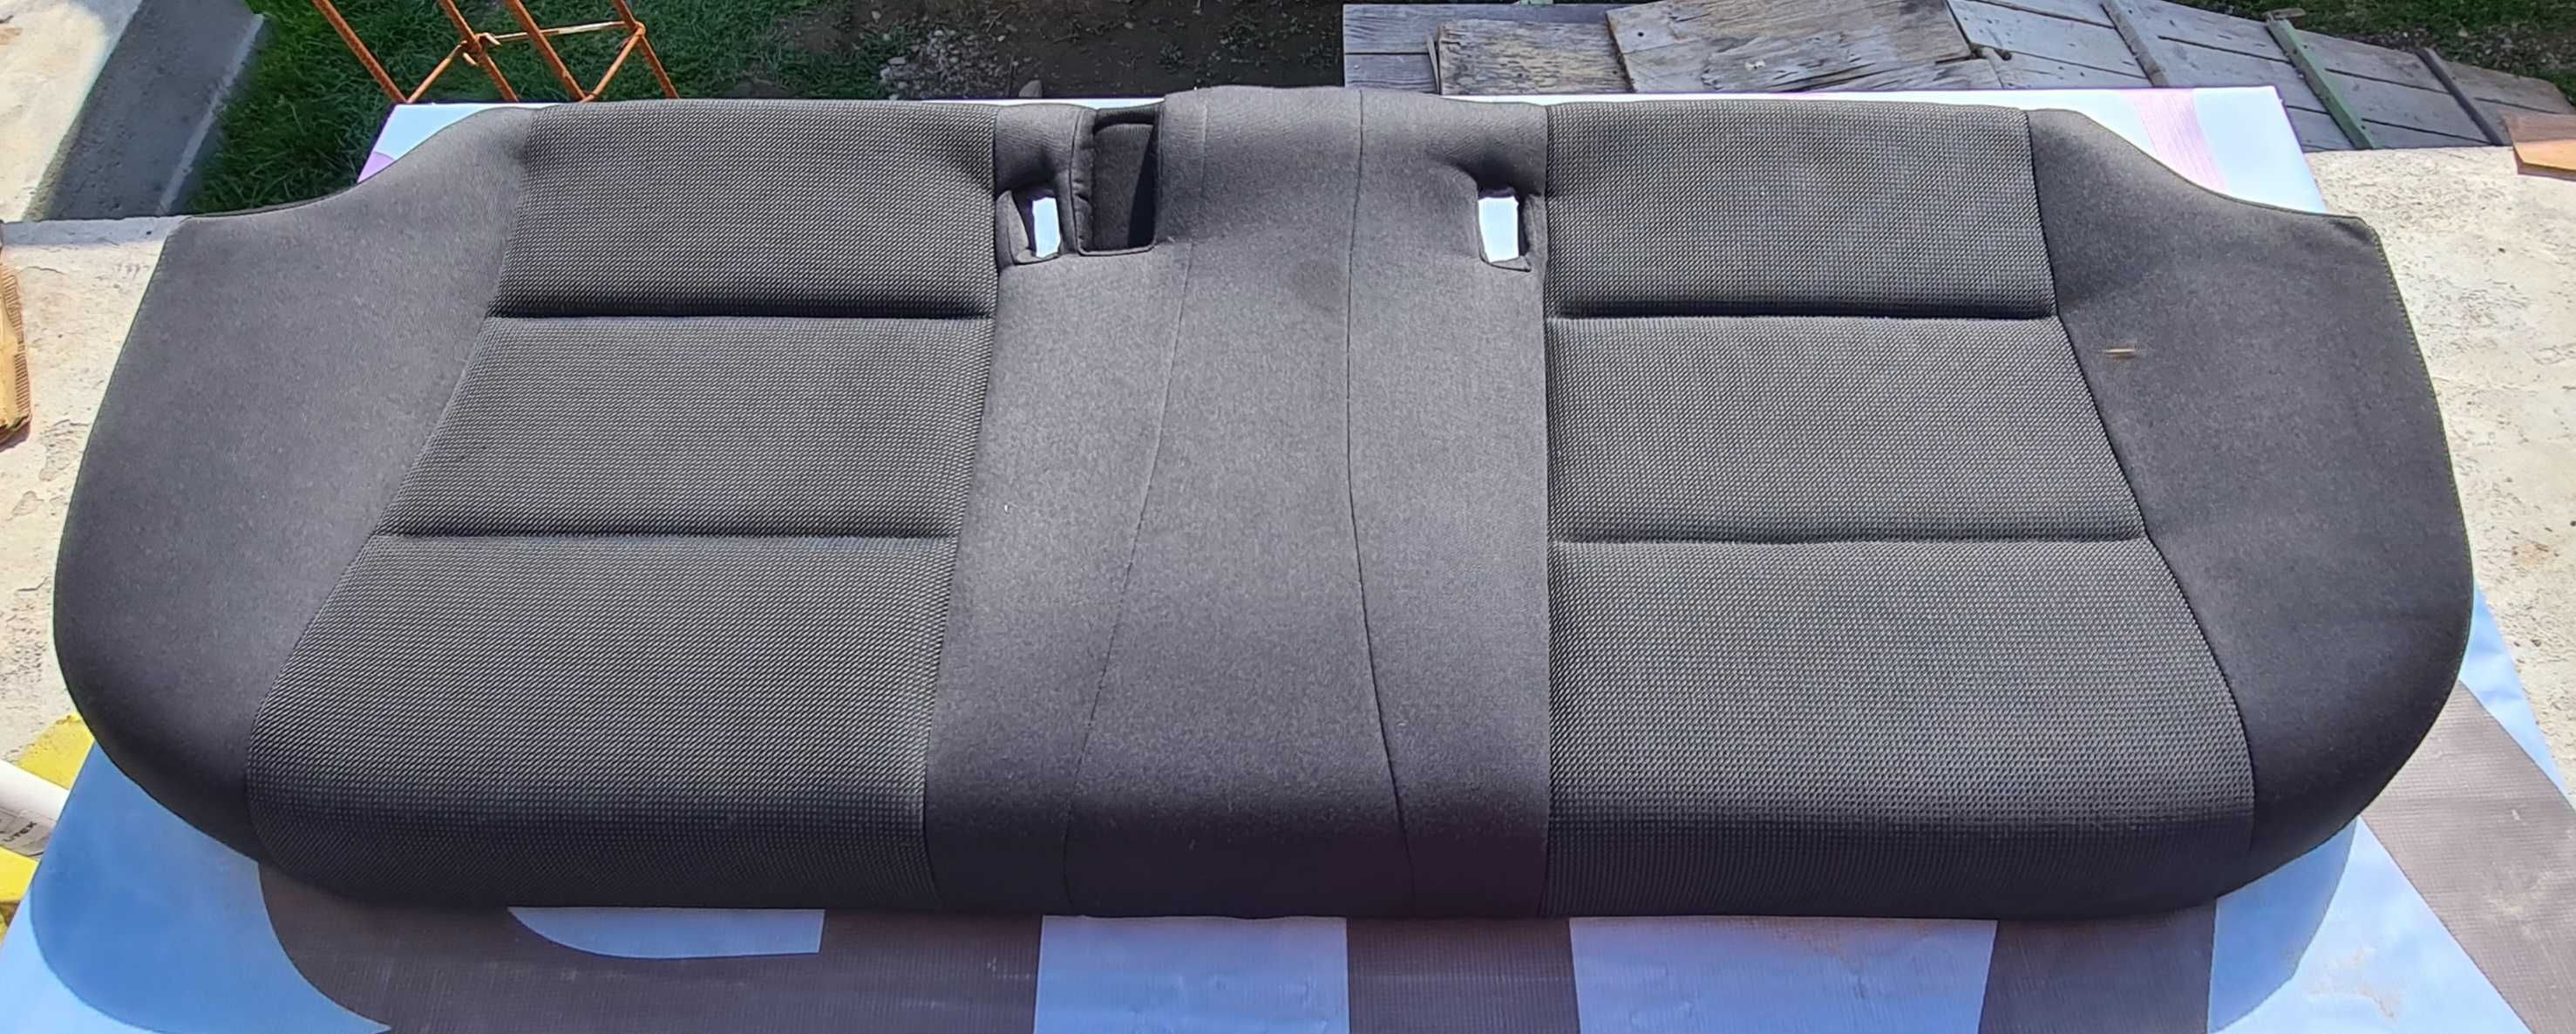 Interior negru textil scaune/bancheta rabatabila BMW F10